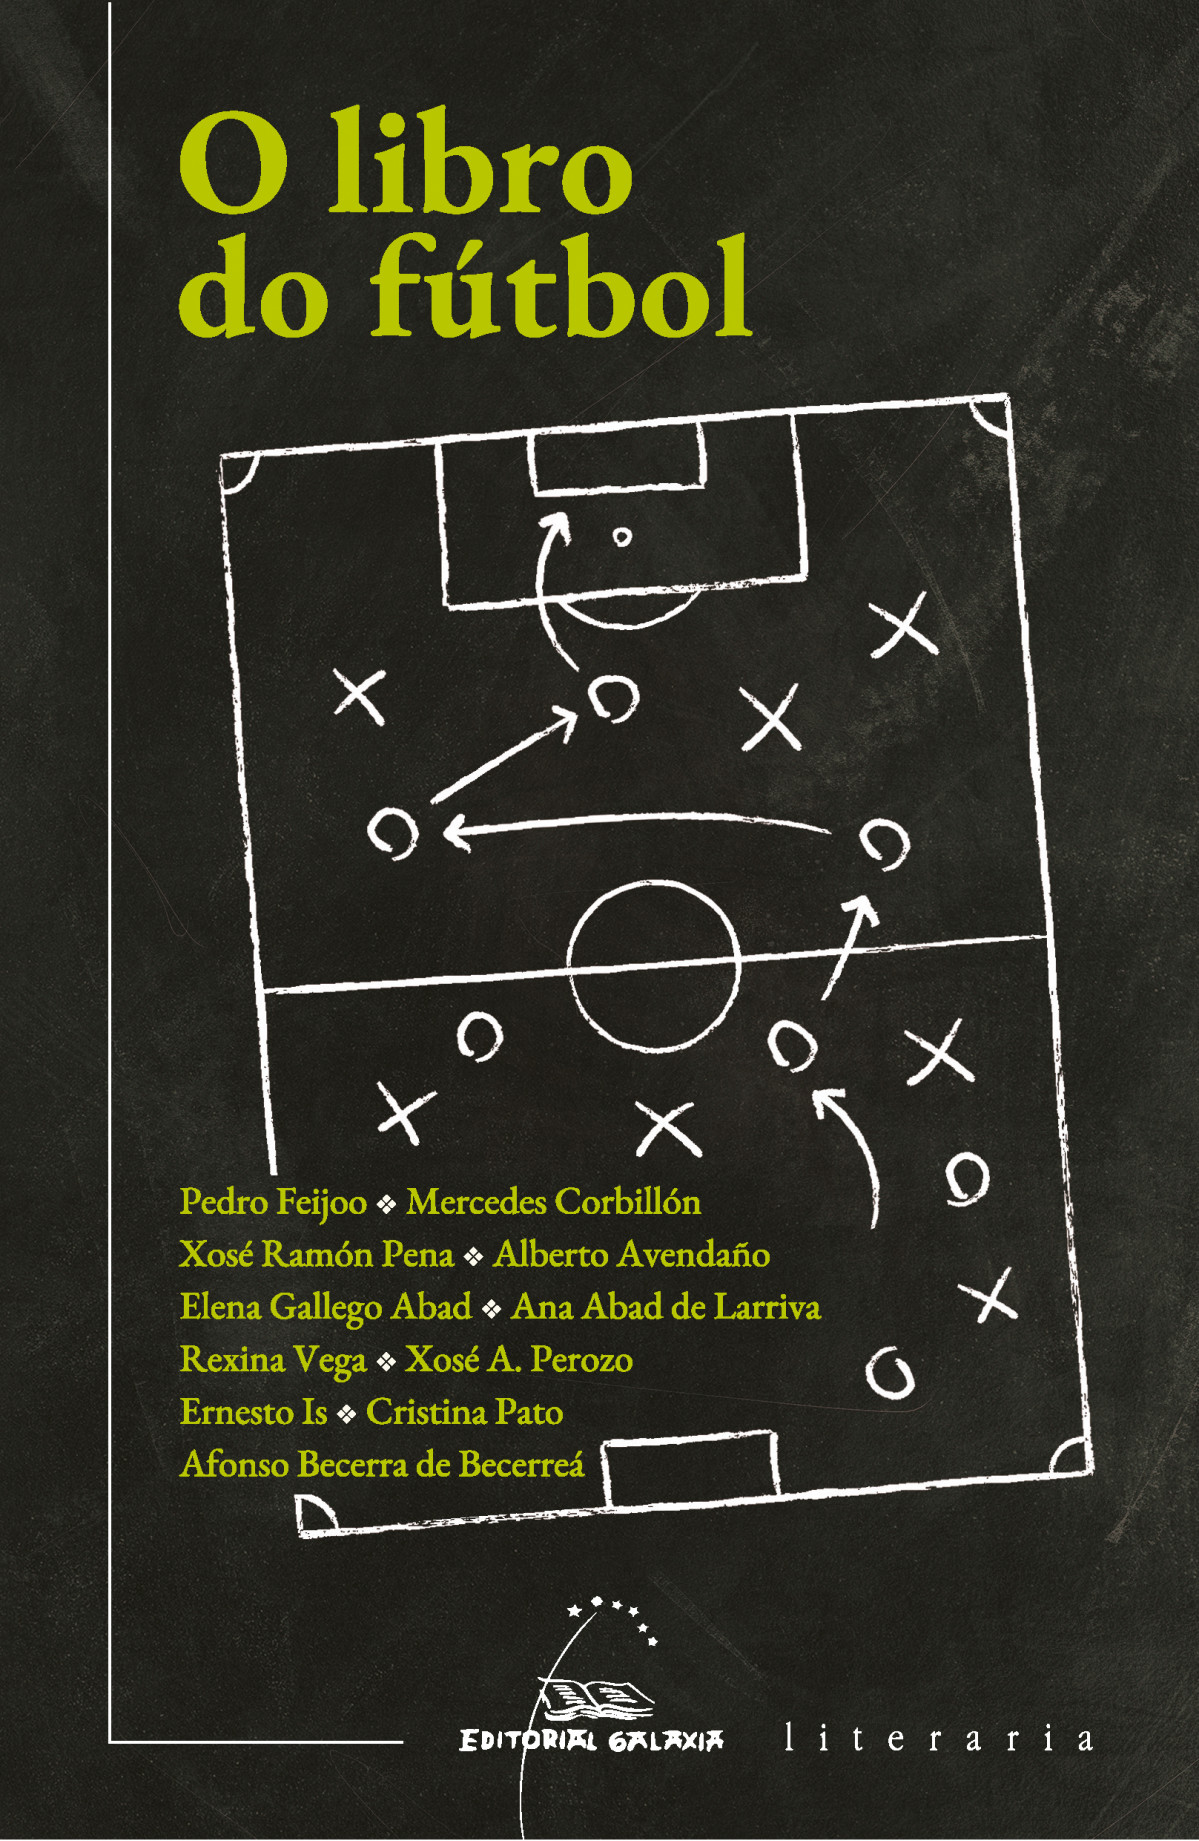 O libro do futbol